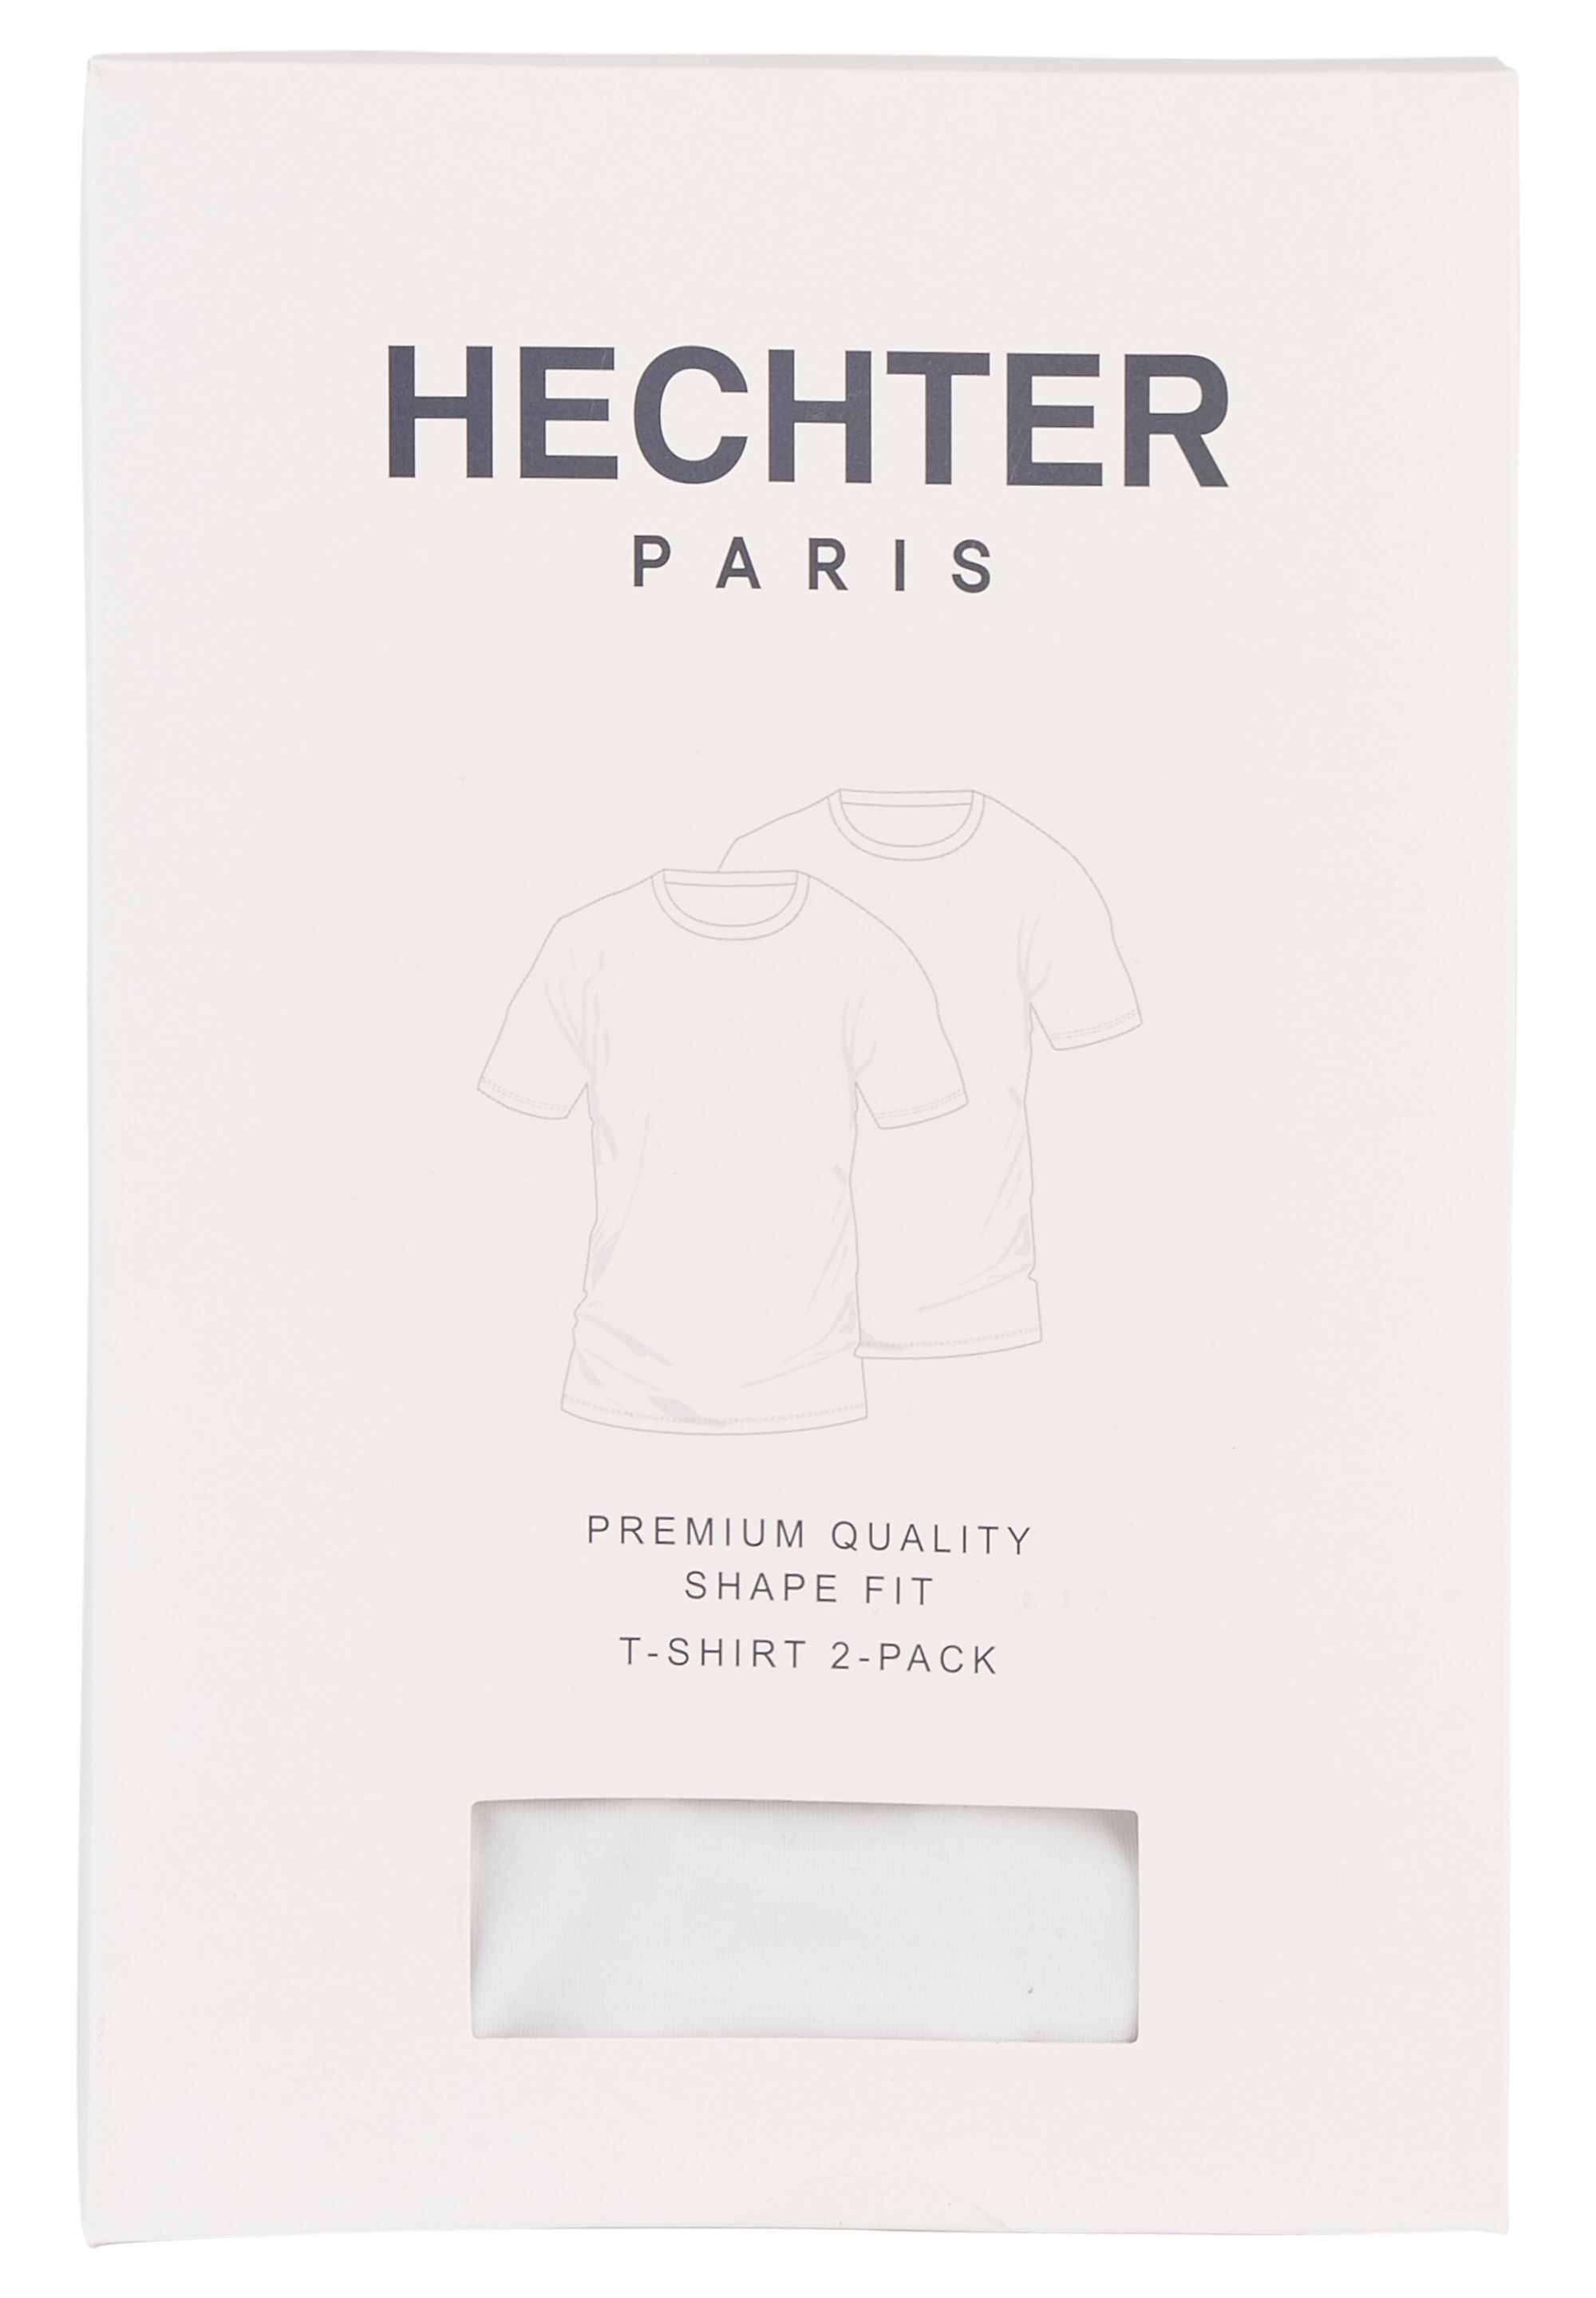 Schlichtes T-Shirt für jede Gelegenheit Doppelpack | Der offizielle HECHTER  PARIS Onlineshop